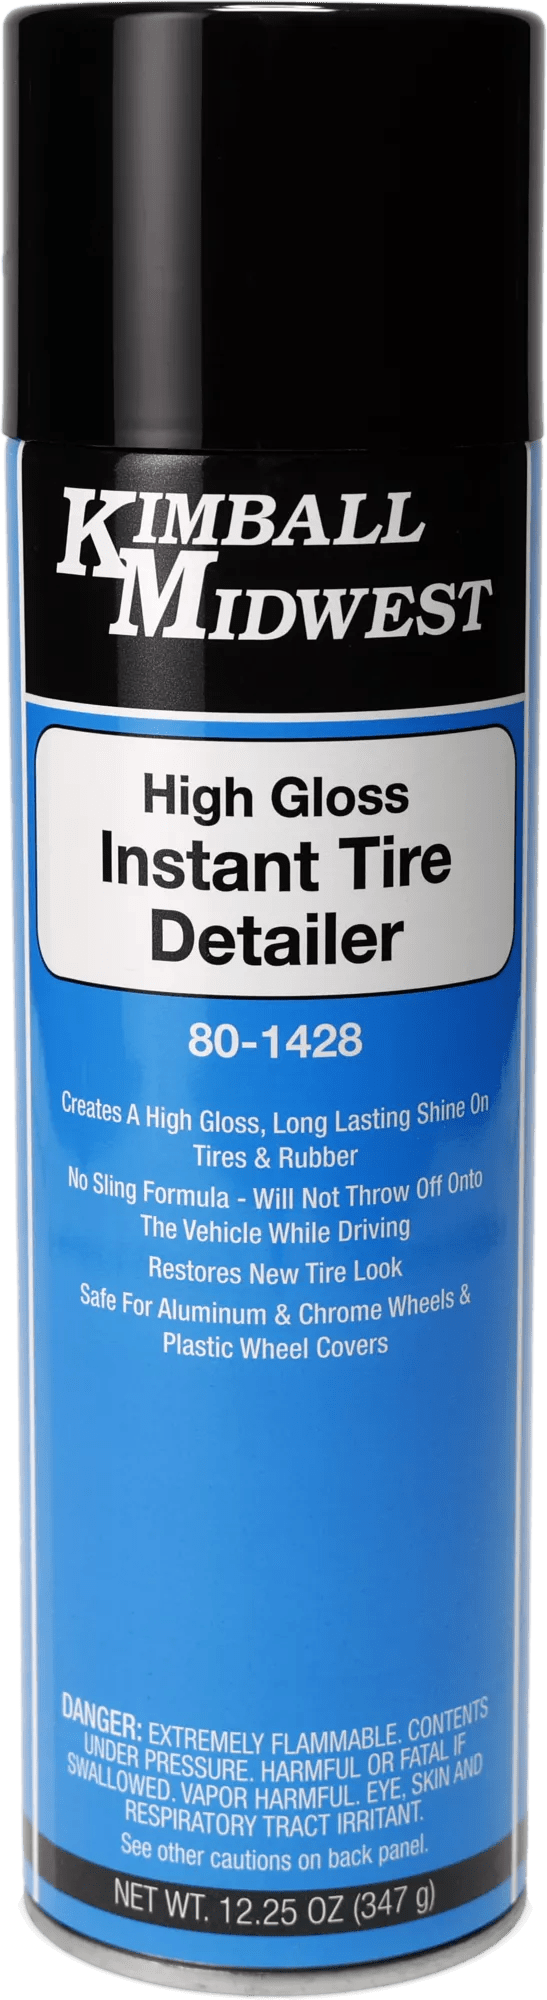 High-Gloss Instant Tire Detailer